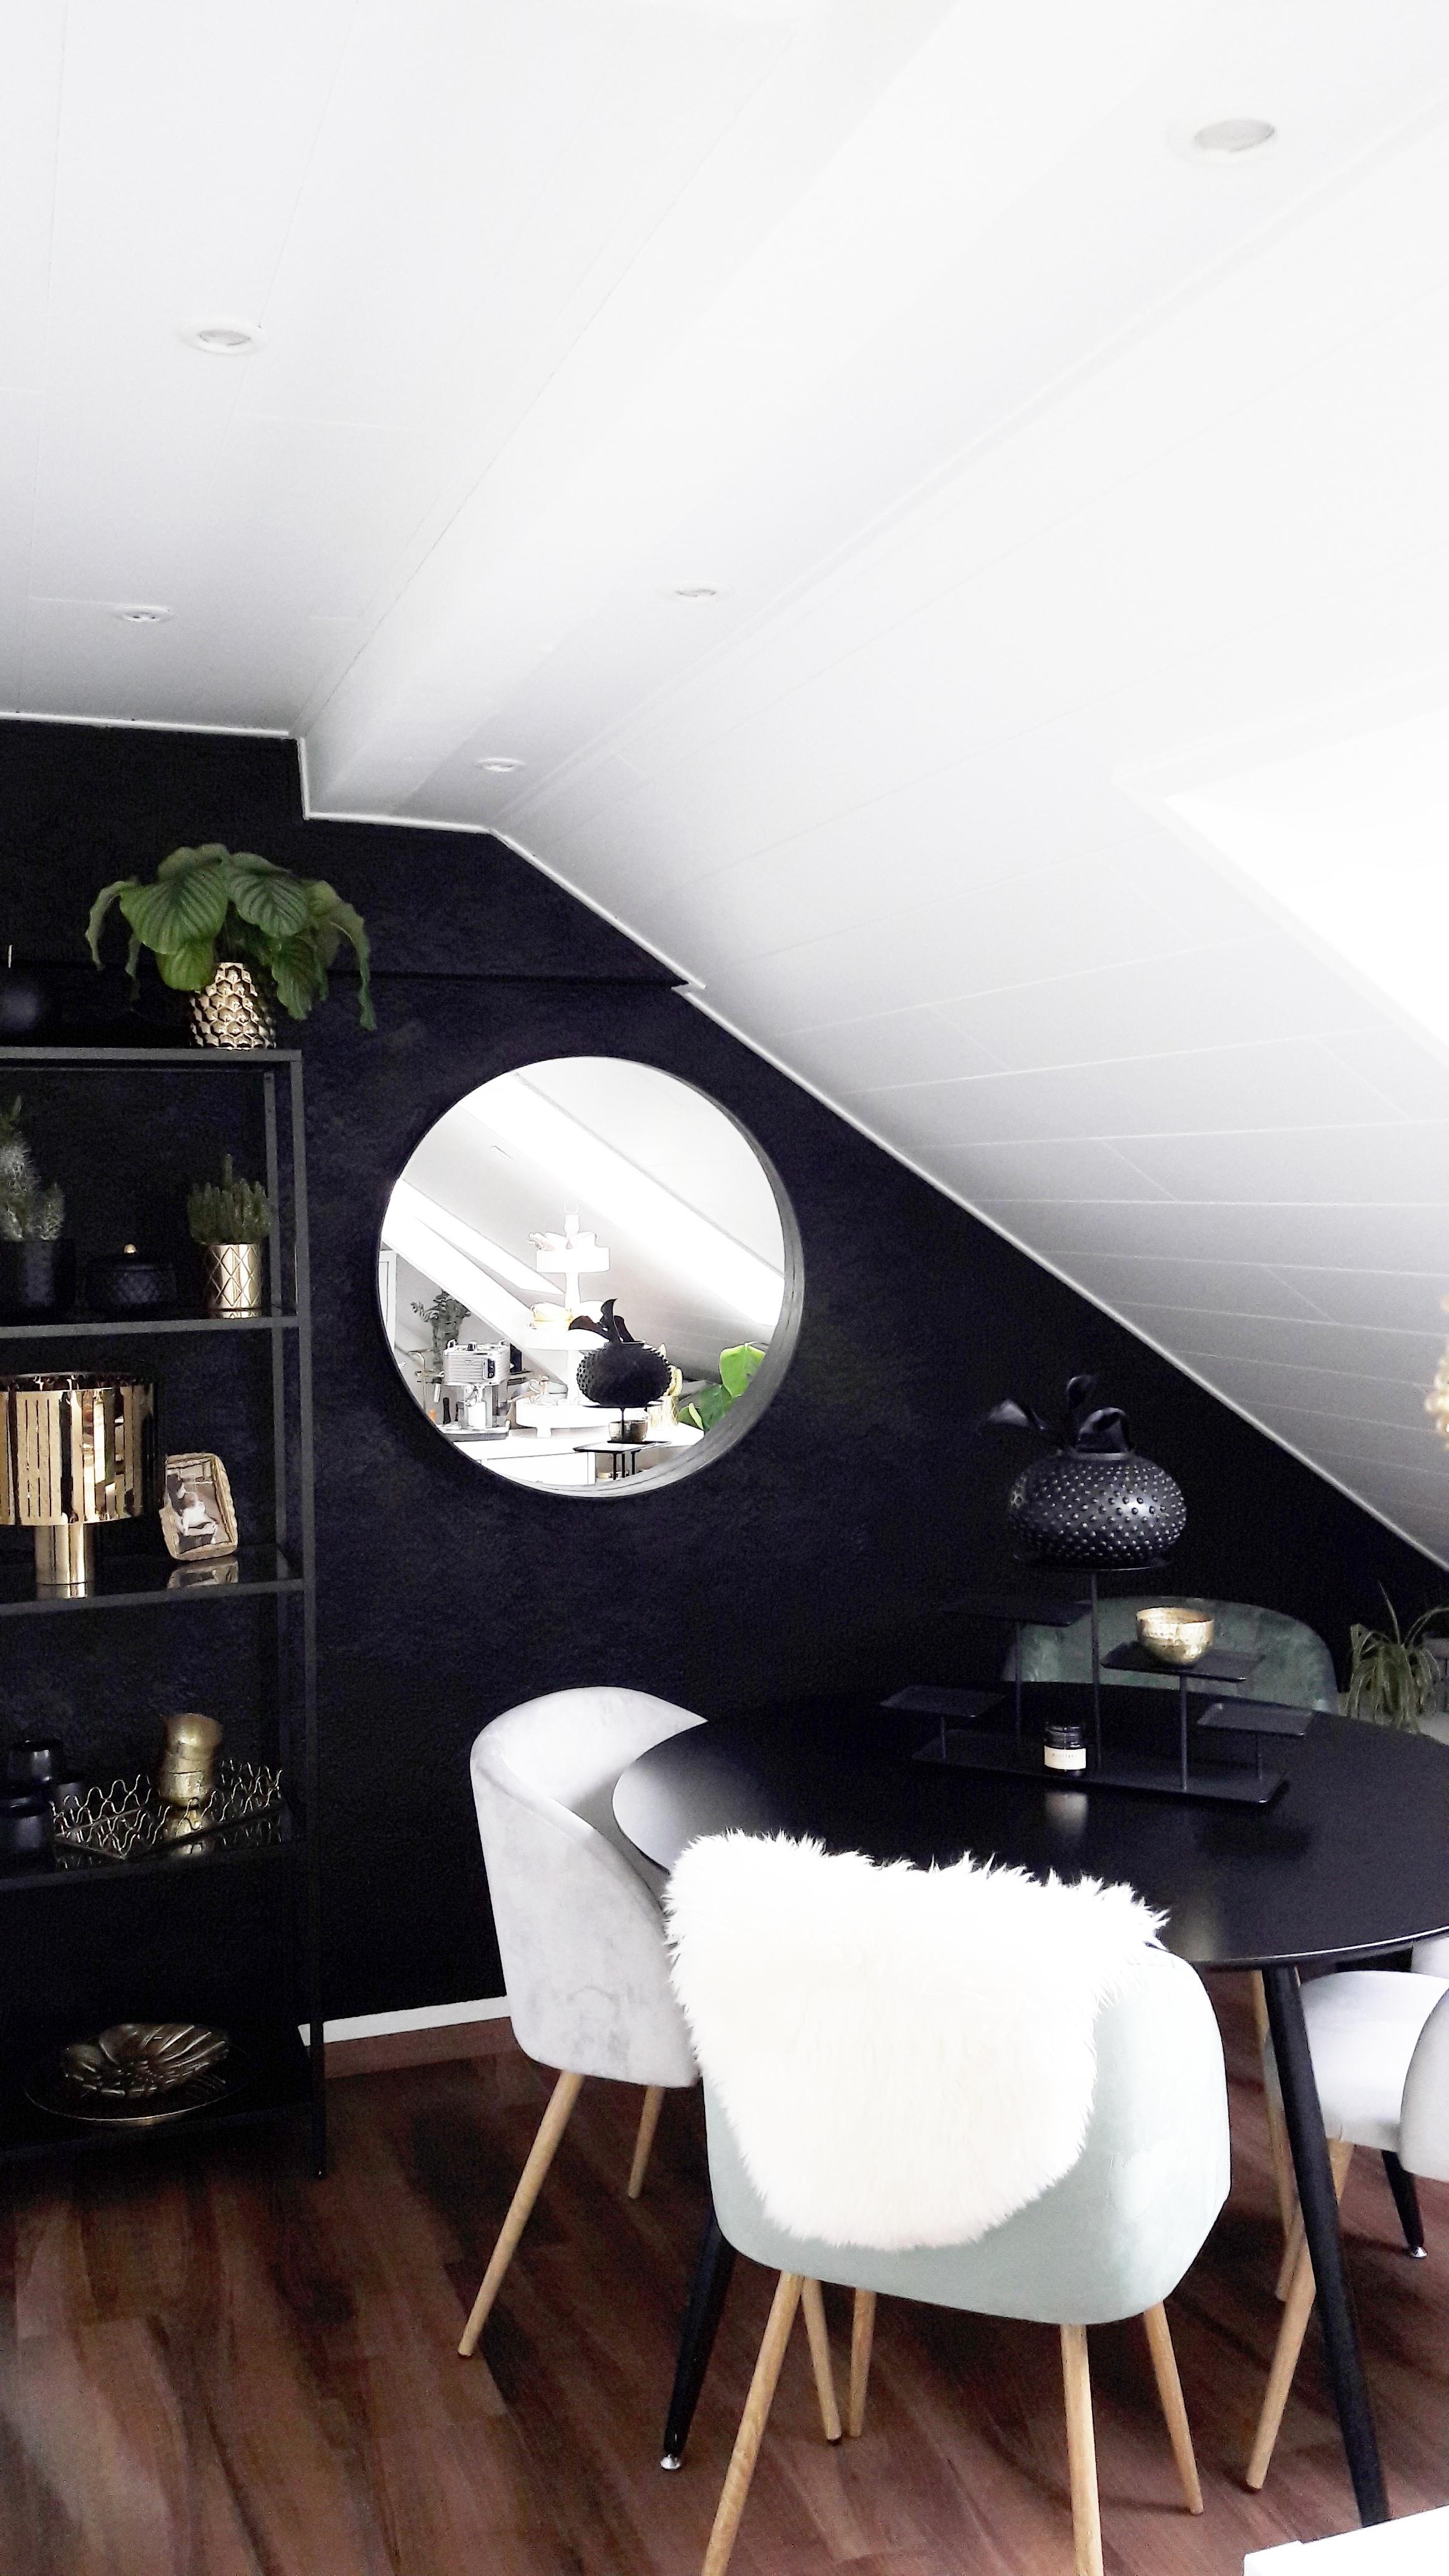 Neue Idee einfach umgesetzt...

#Essbereich #Dachgeschoss #Samt #Schafsfell #Black #Gold #white #Essecke #Esstisch 